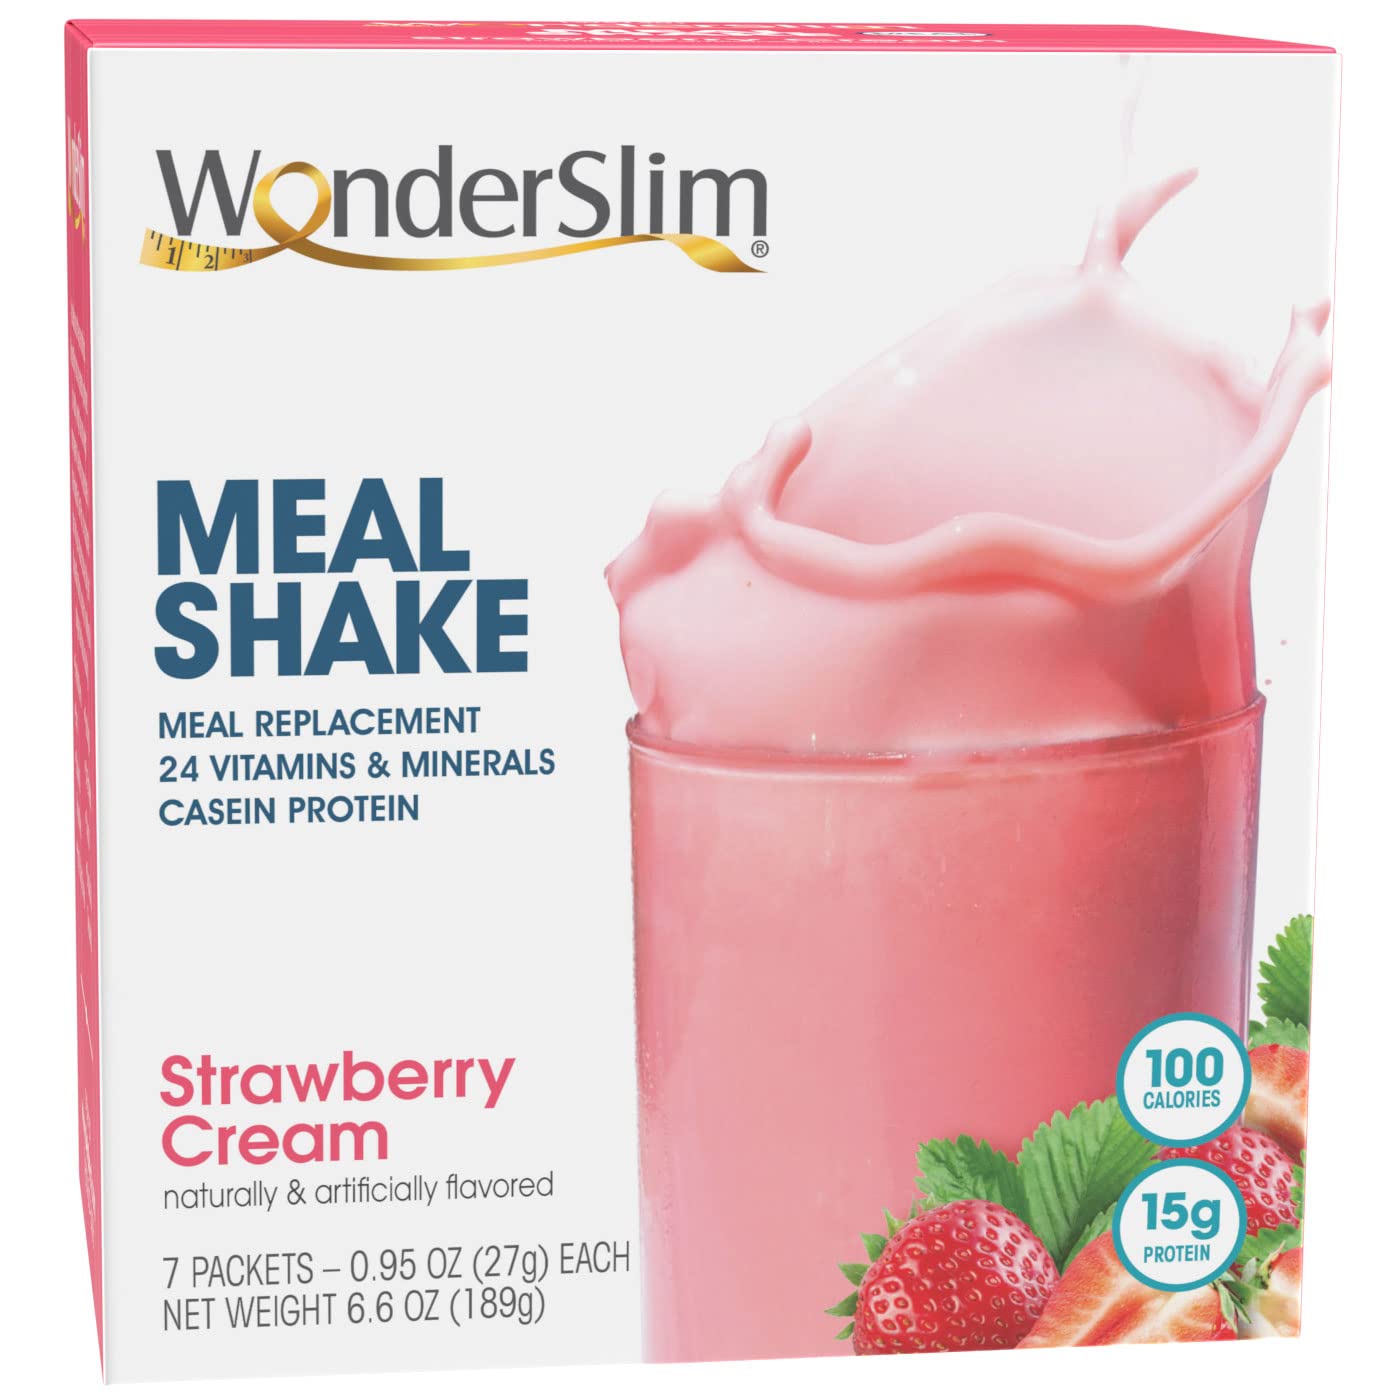 WonderSlim Meal Replacement Shake, Strawberry Cream, 15g Protein, 24 Vitamins & Minerals, Gluten Free (7ct)